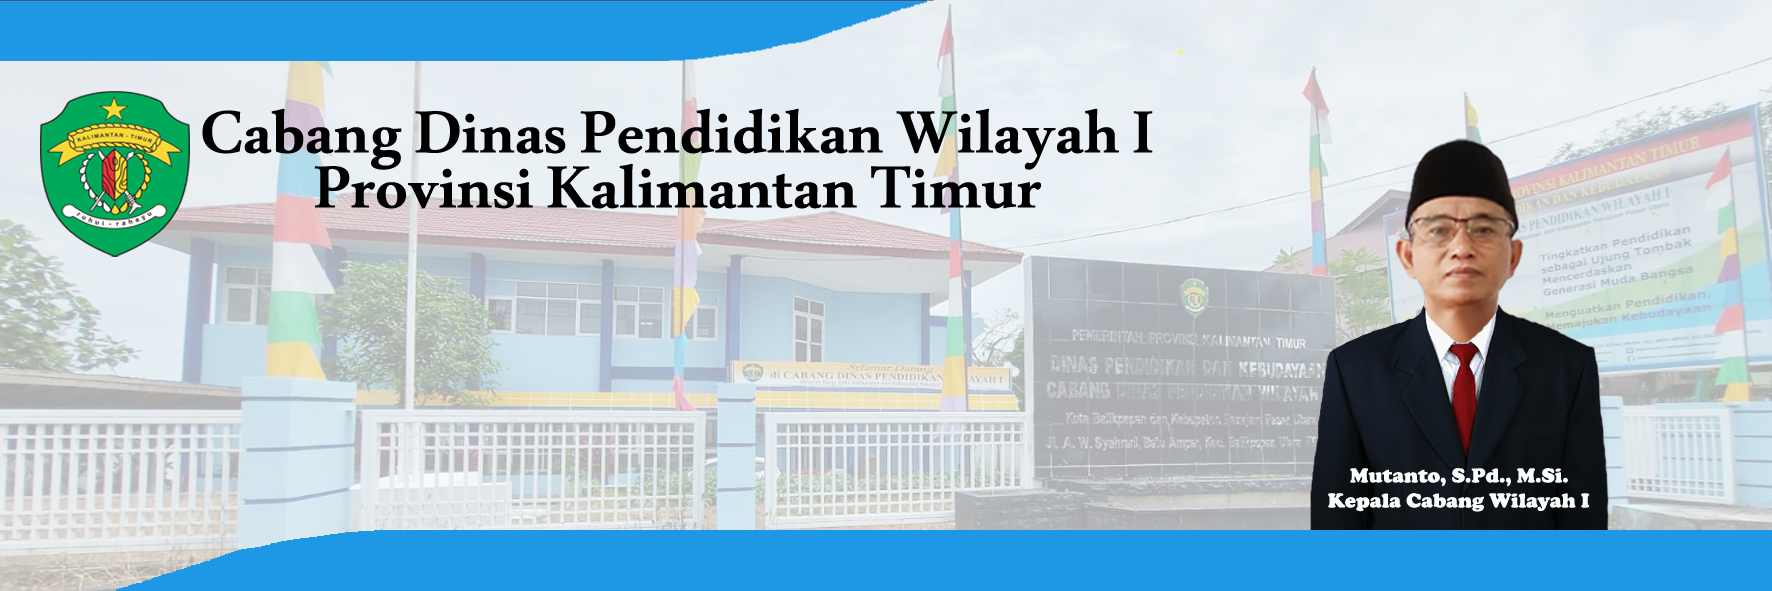 Cabang Dinas Pendidikan Wilayah I Provinsi Kalimantan Timur